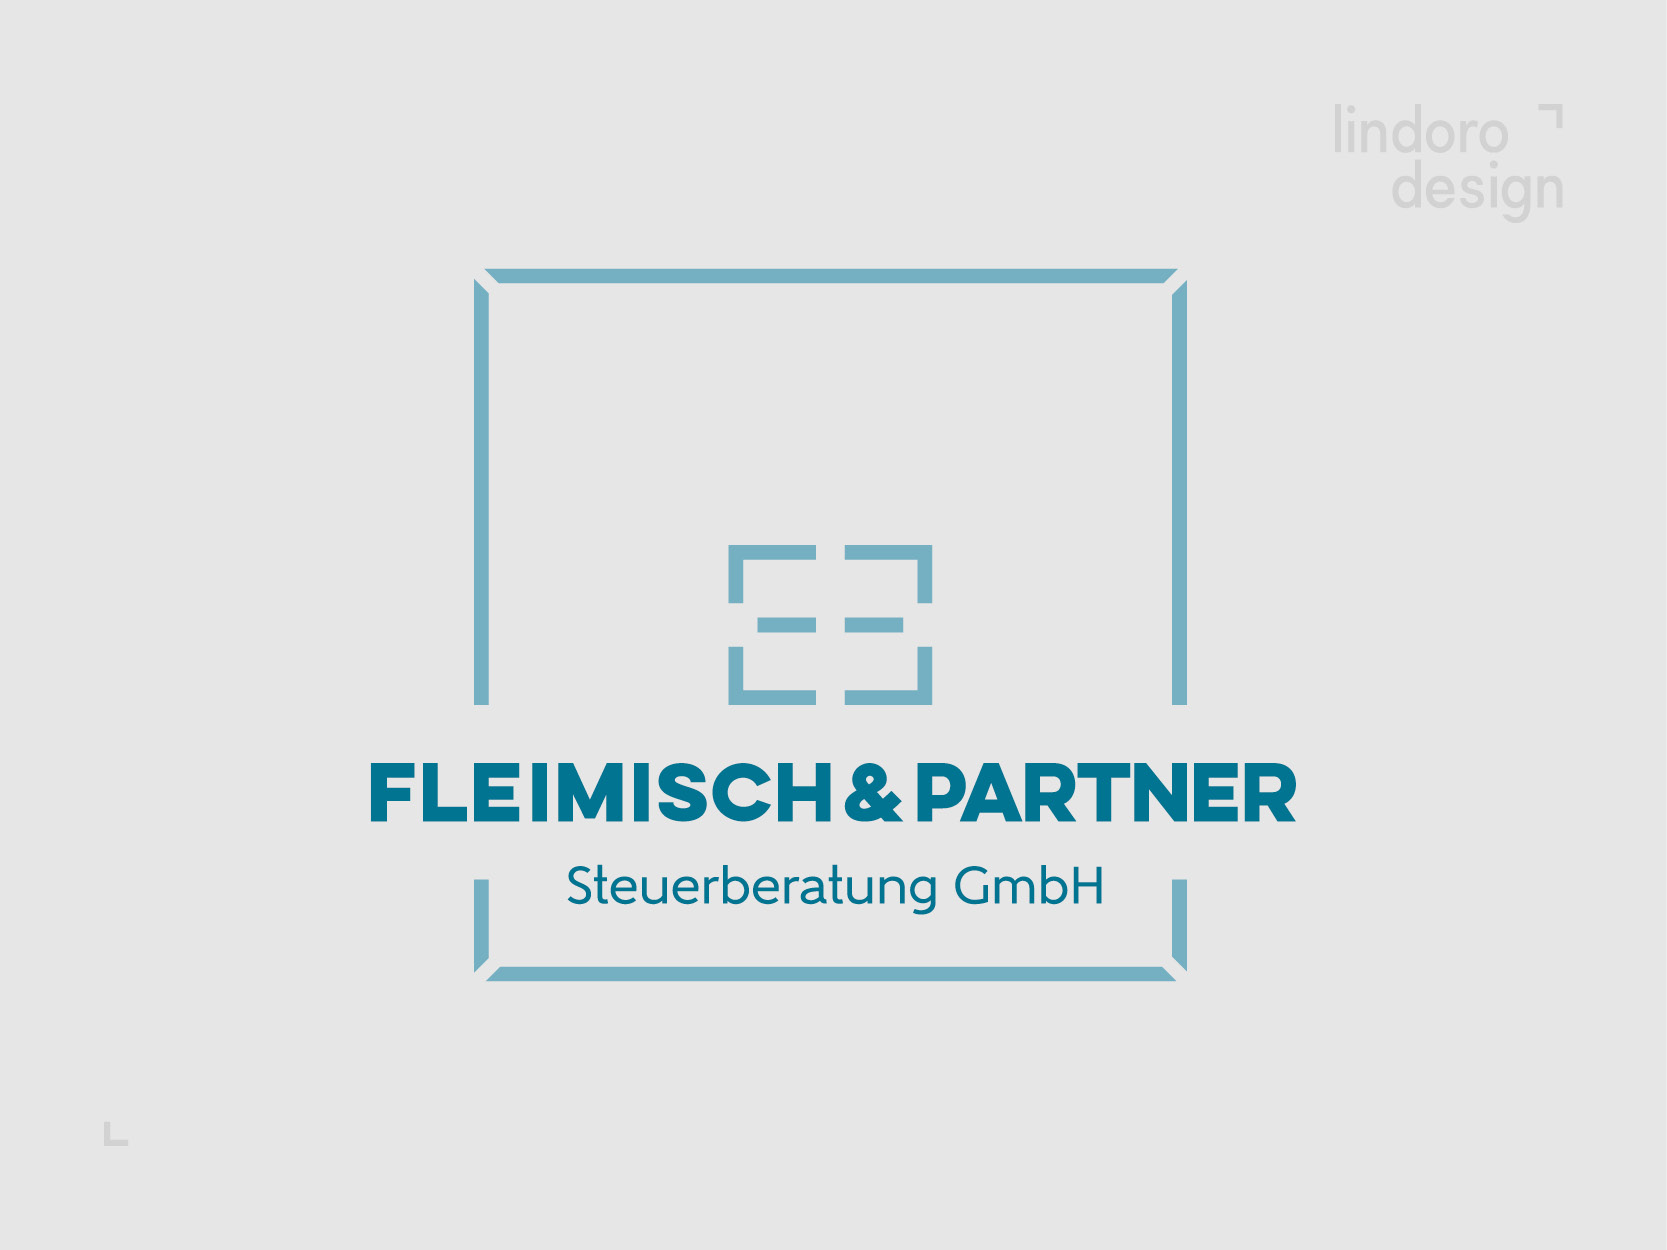 Fleimisch & Partner